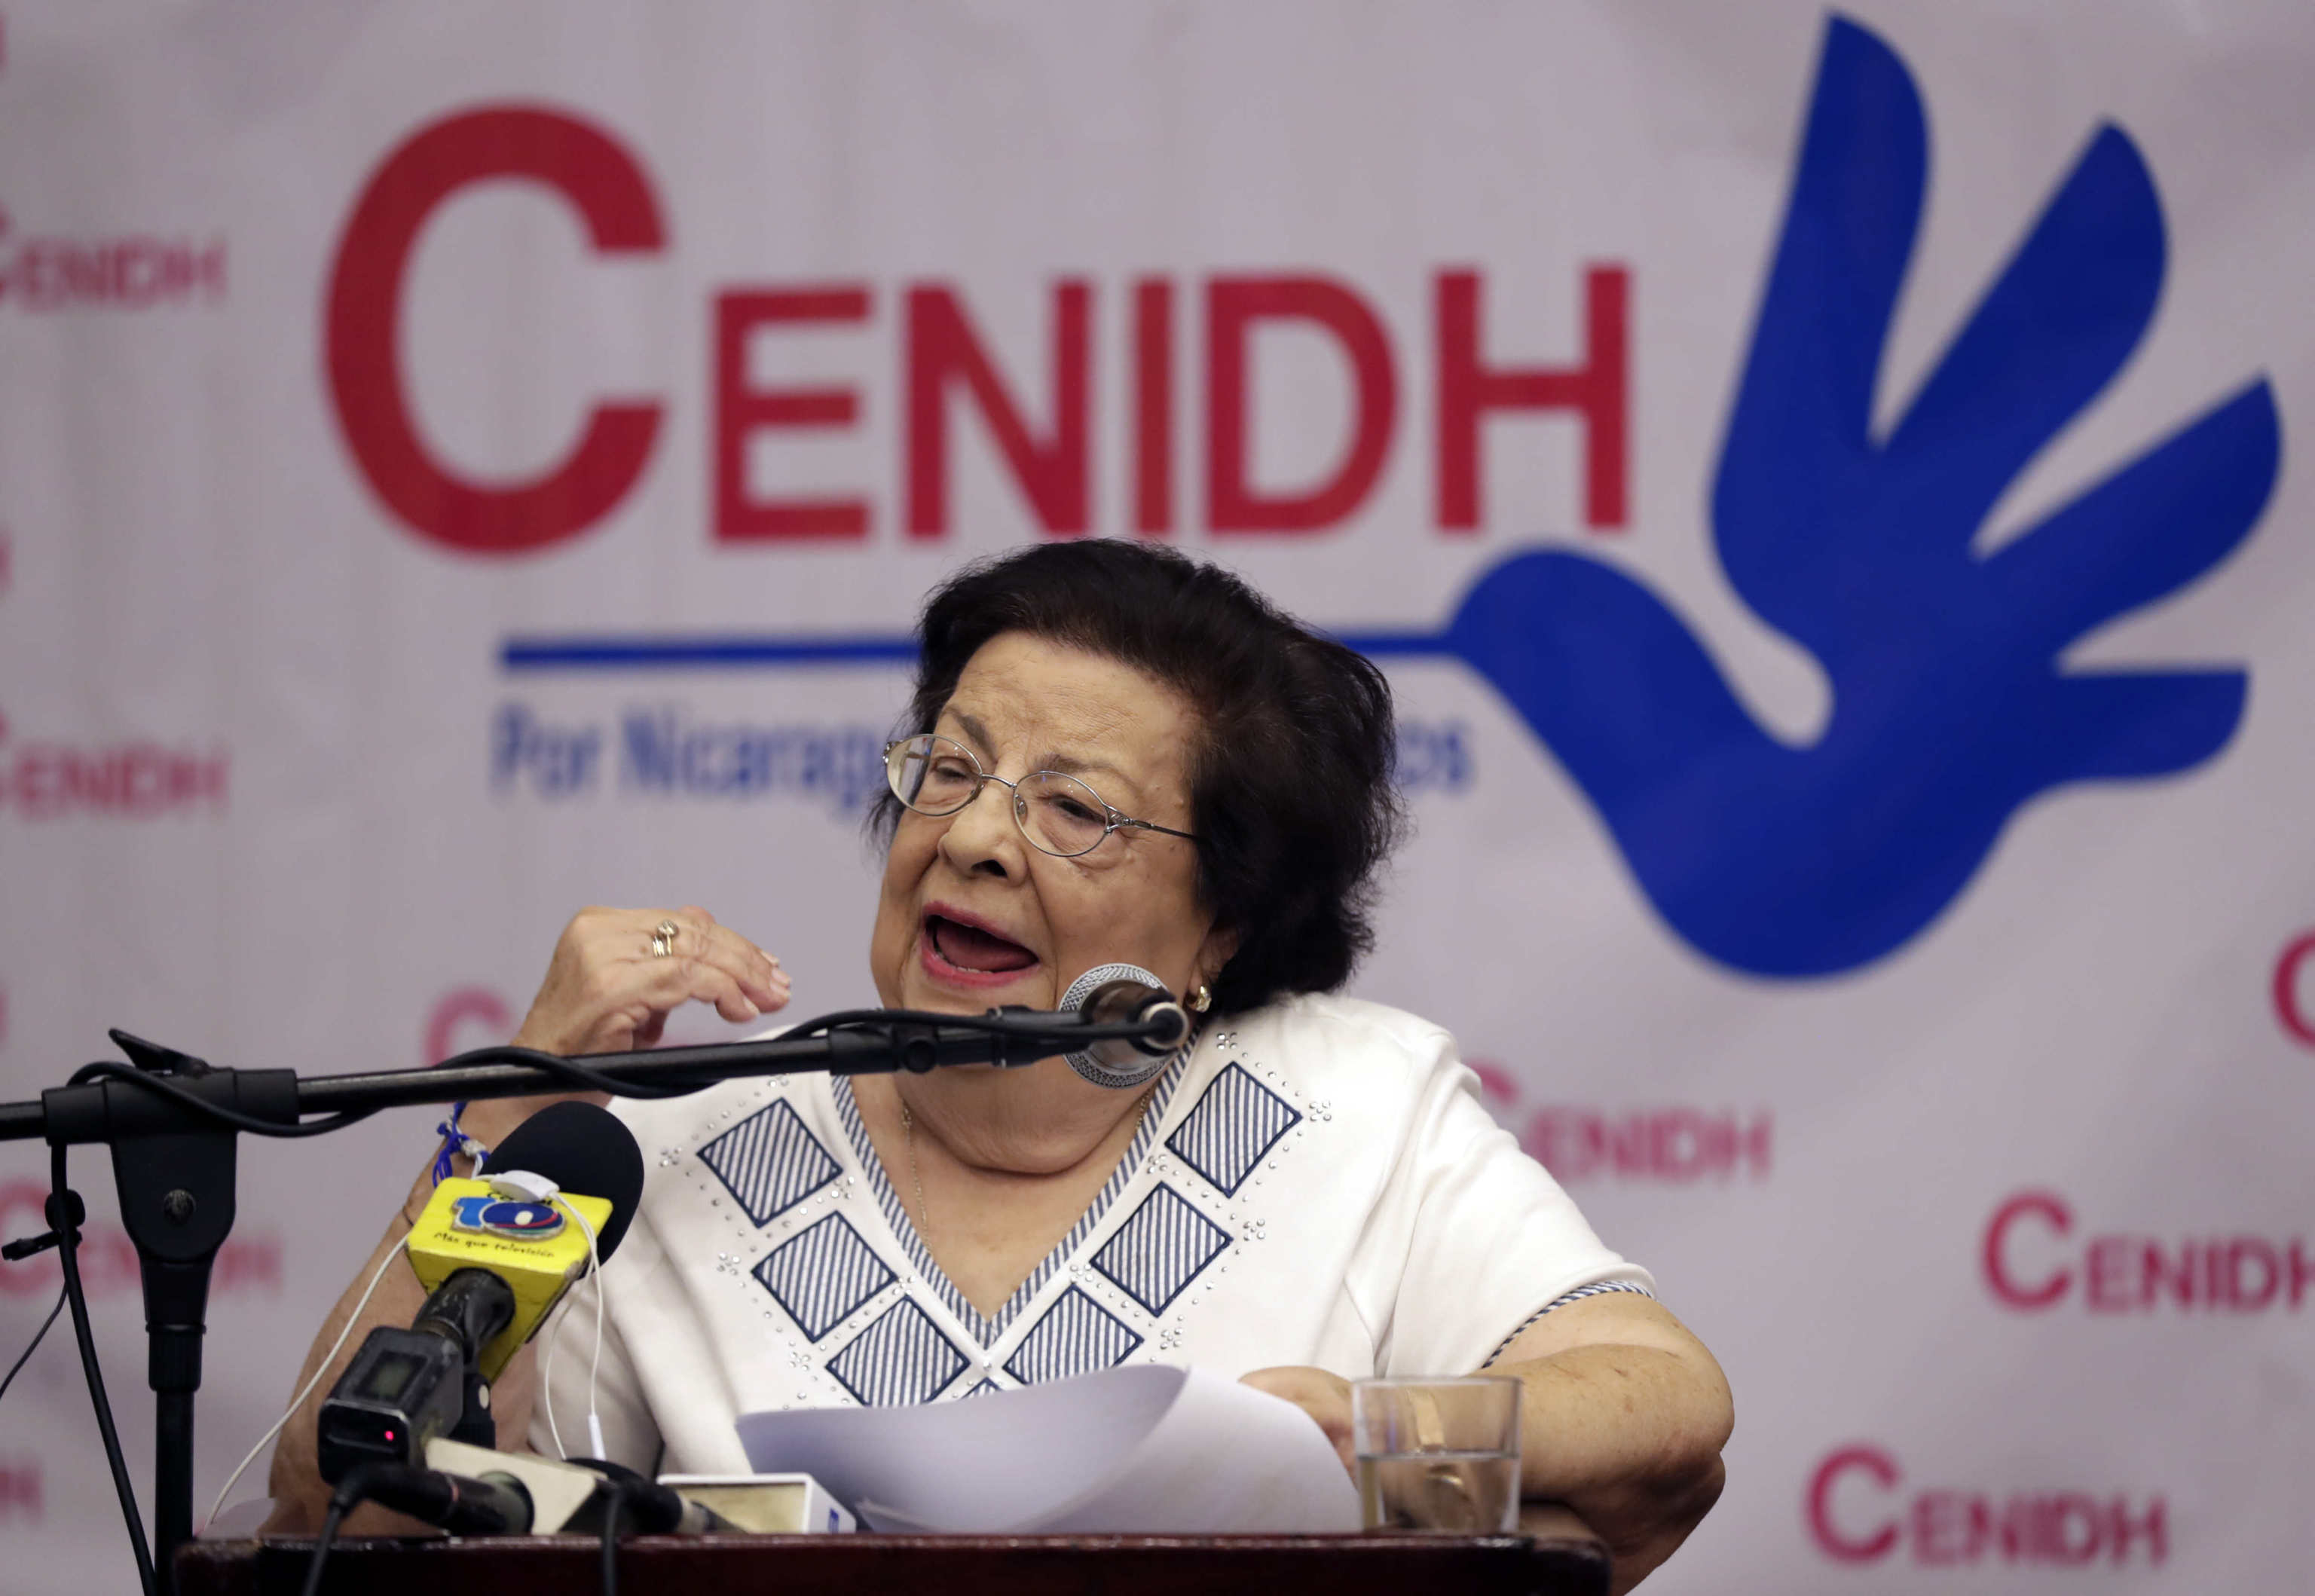 La defensora de derechos humanos Vilma Nez durante una conferencia en Managua (Nicaragua).